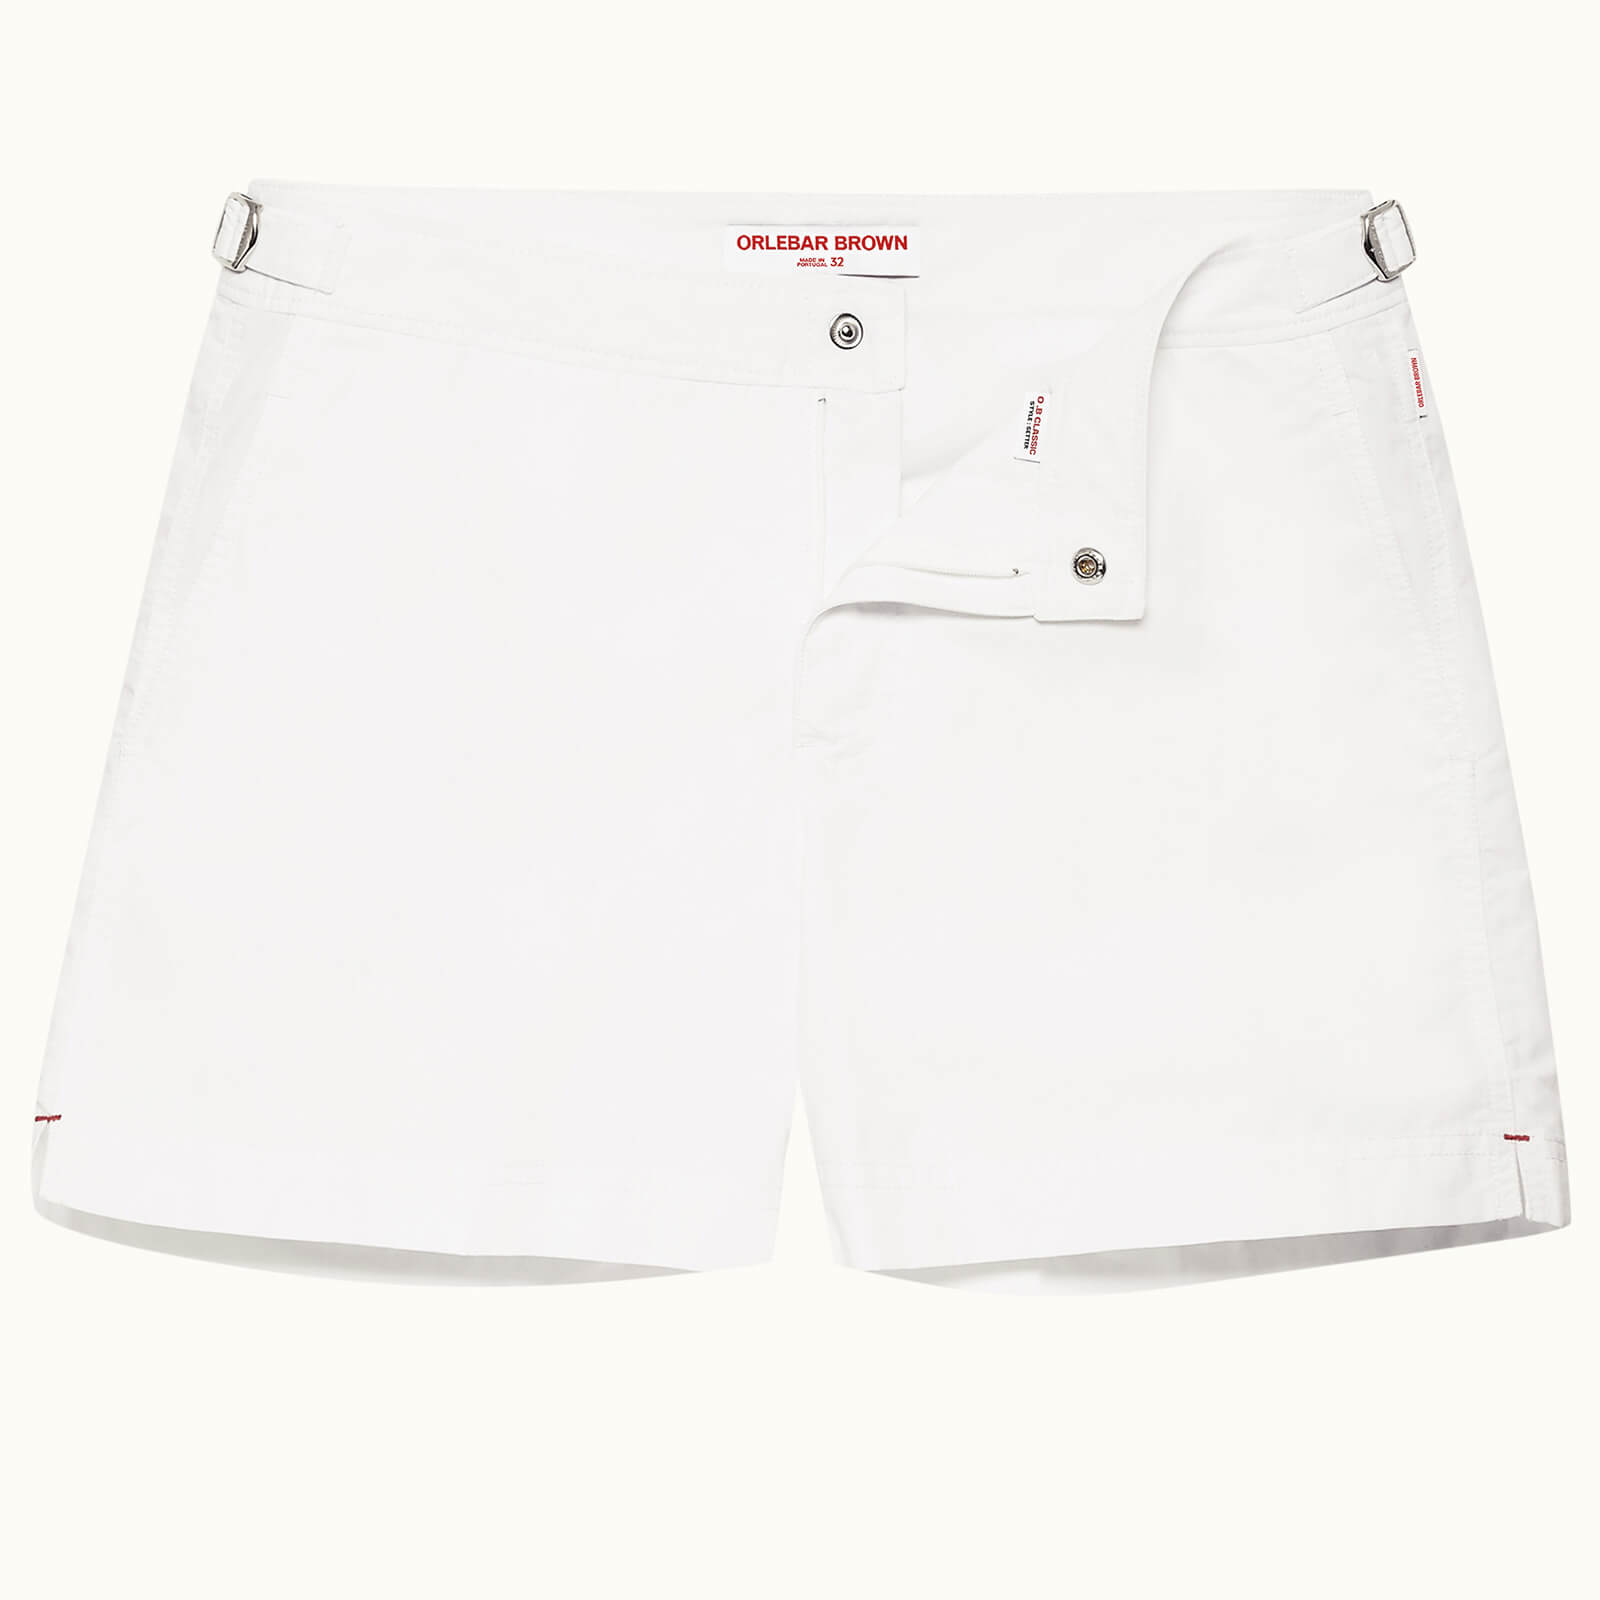 orlebar brown men's setter swim shorts - white - w34